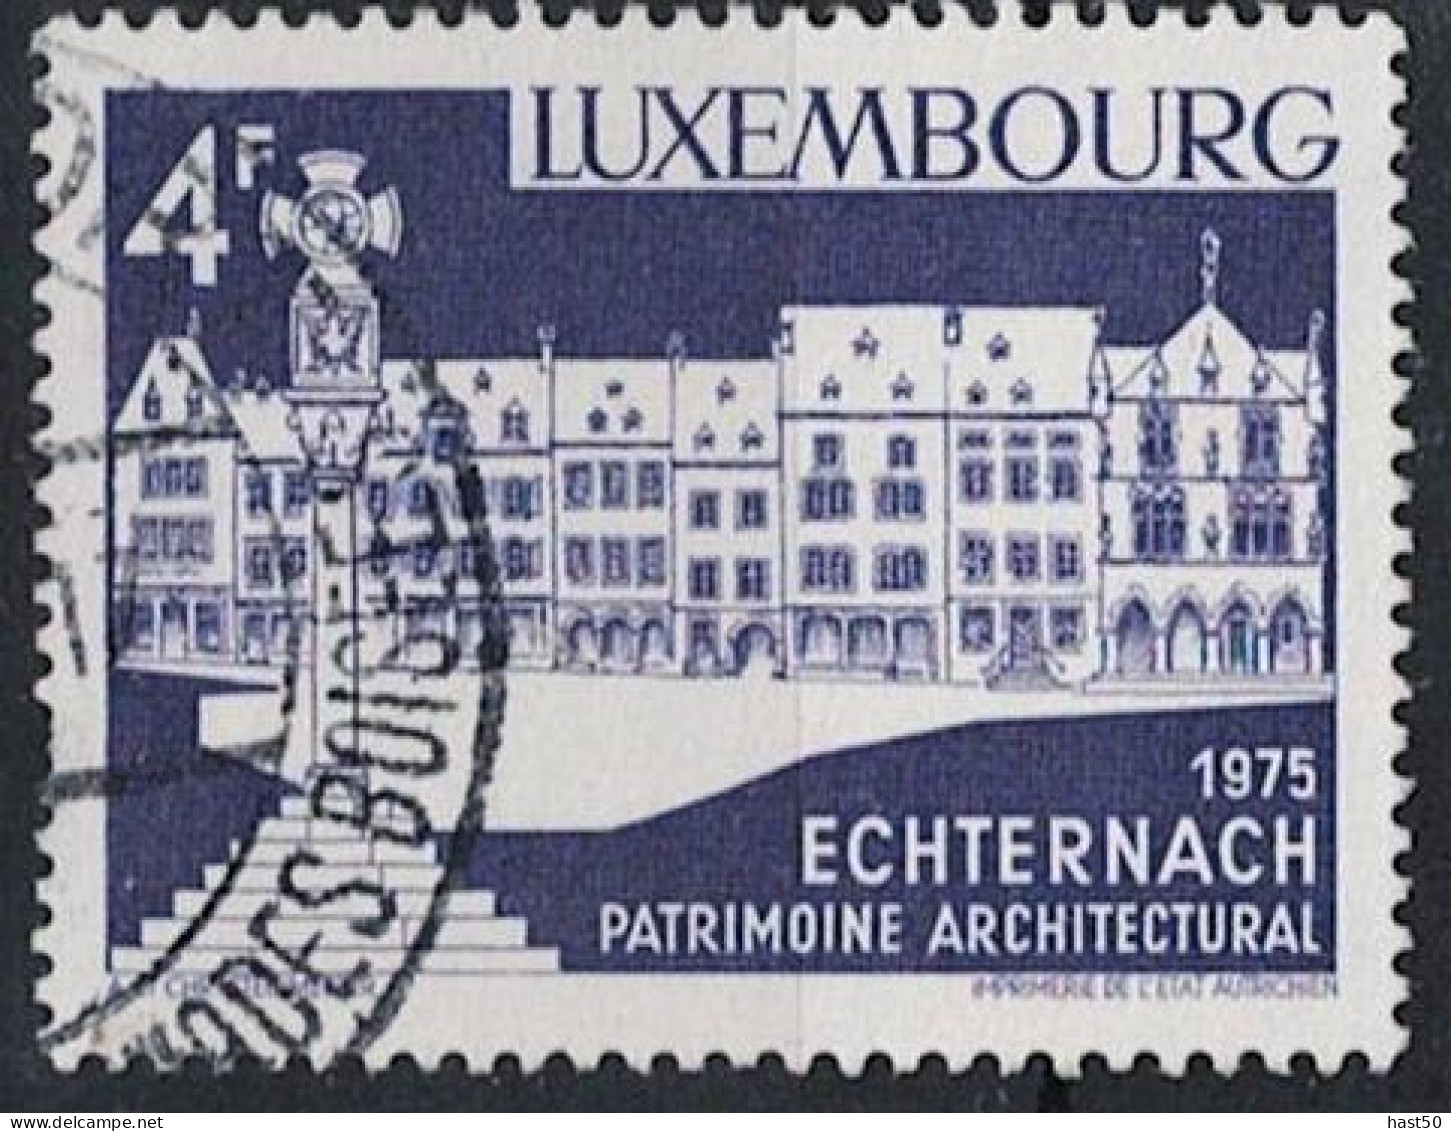 Luxemburg - Echternach, Marktplatz (MiNr: 902) 1975 - Gest Used Obl - Usati